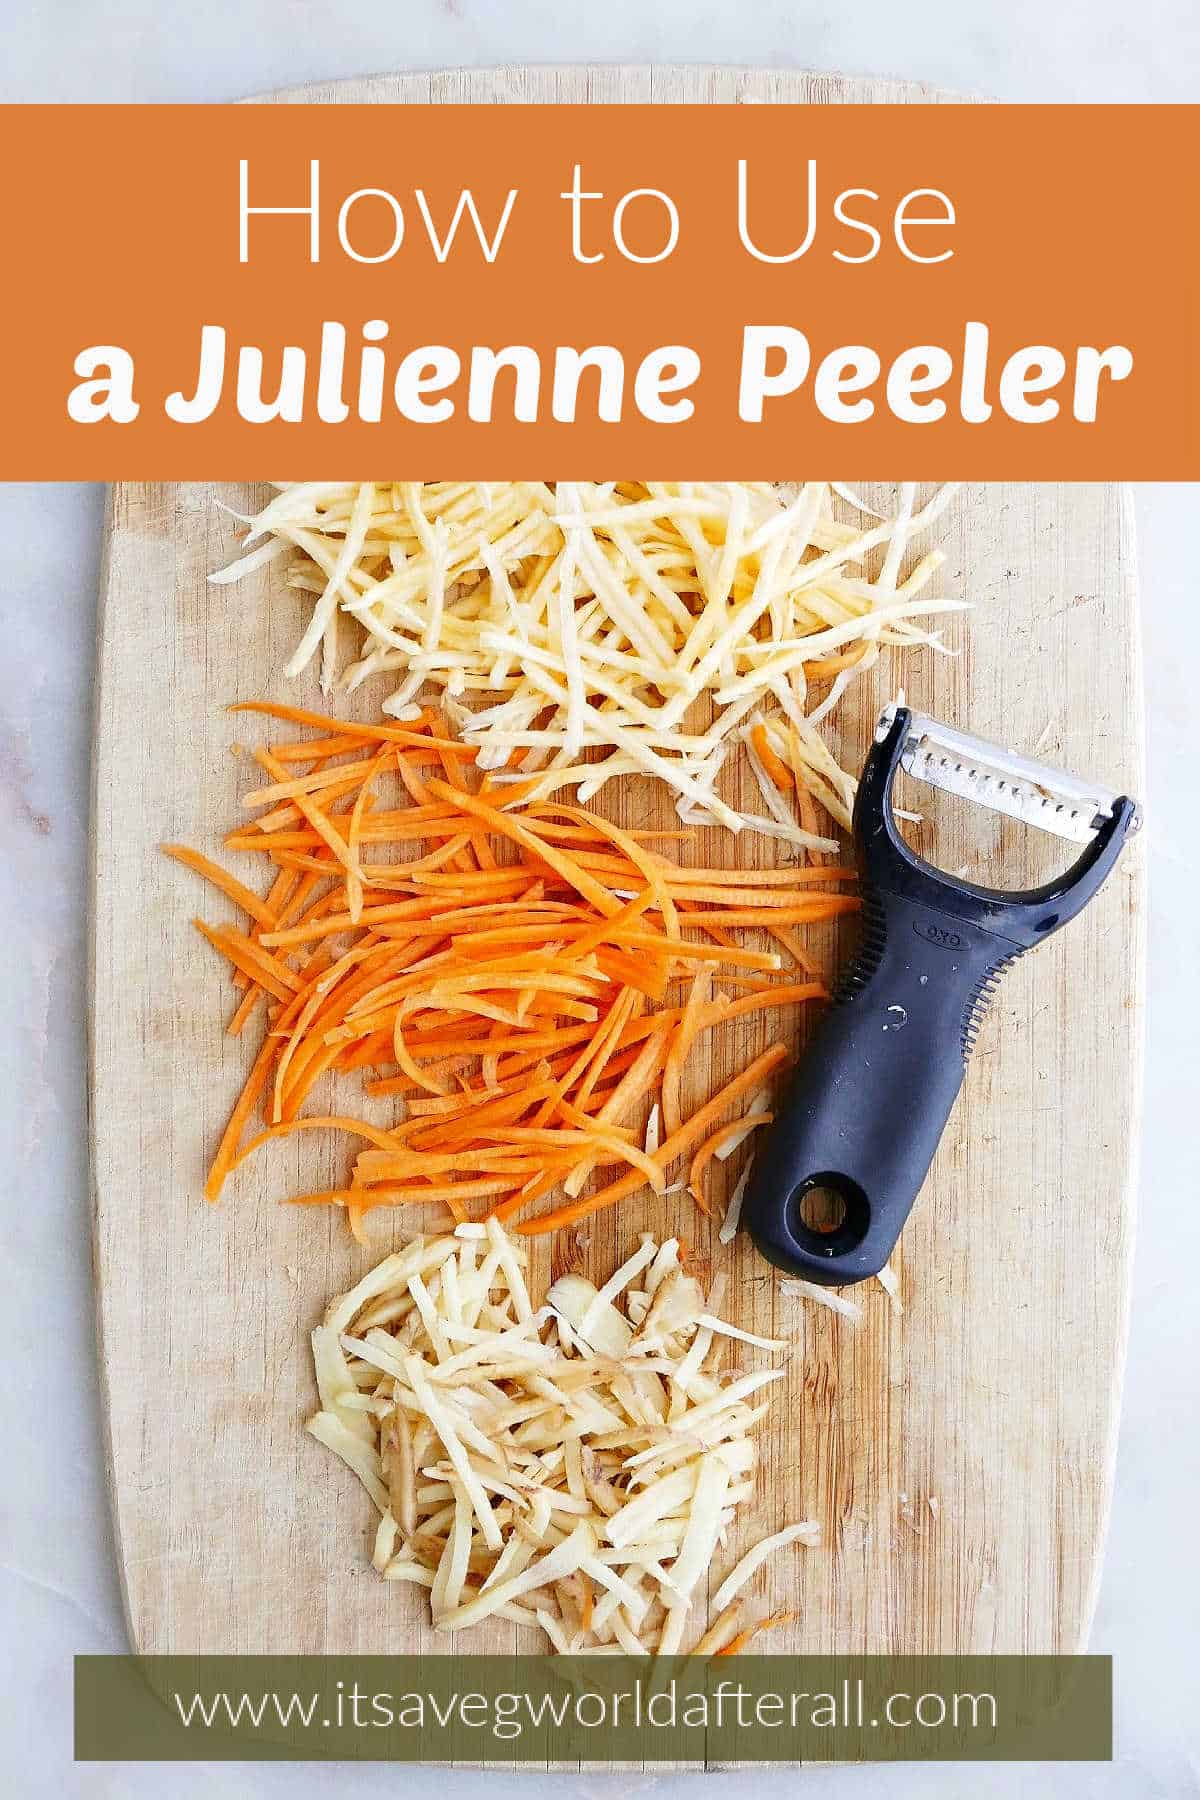 https://itsavegworldafterall.com/wp-content/uploads/2021/02/How-to-Use-a-Julienne-Peeler-pin.jpg